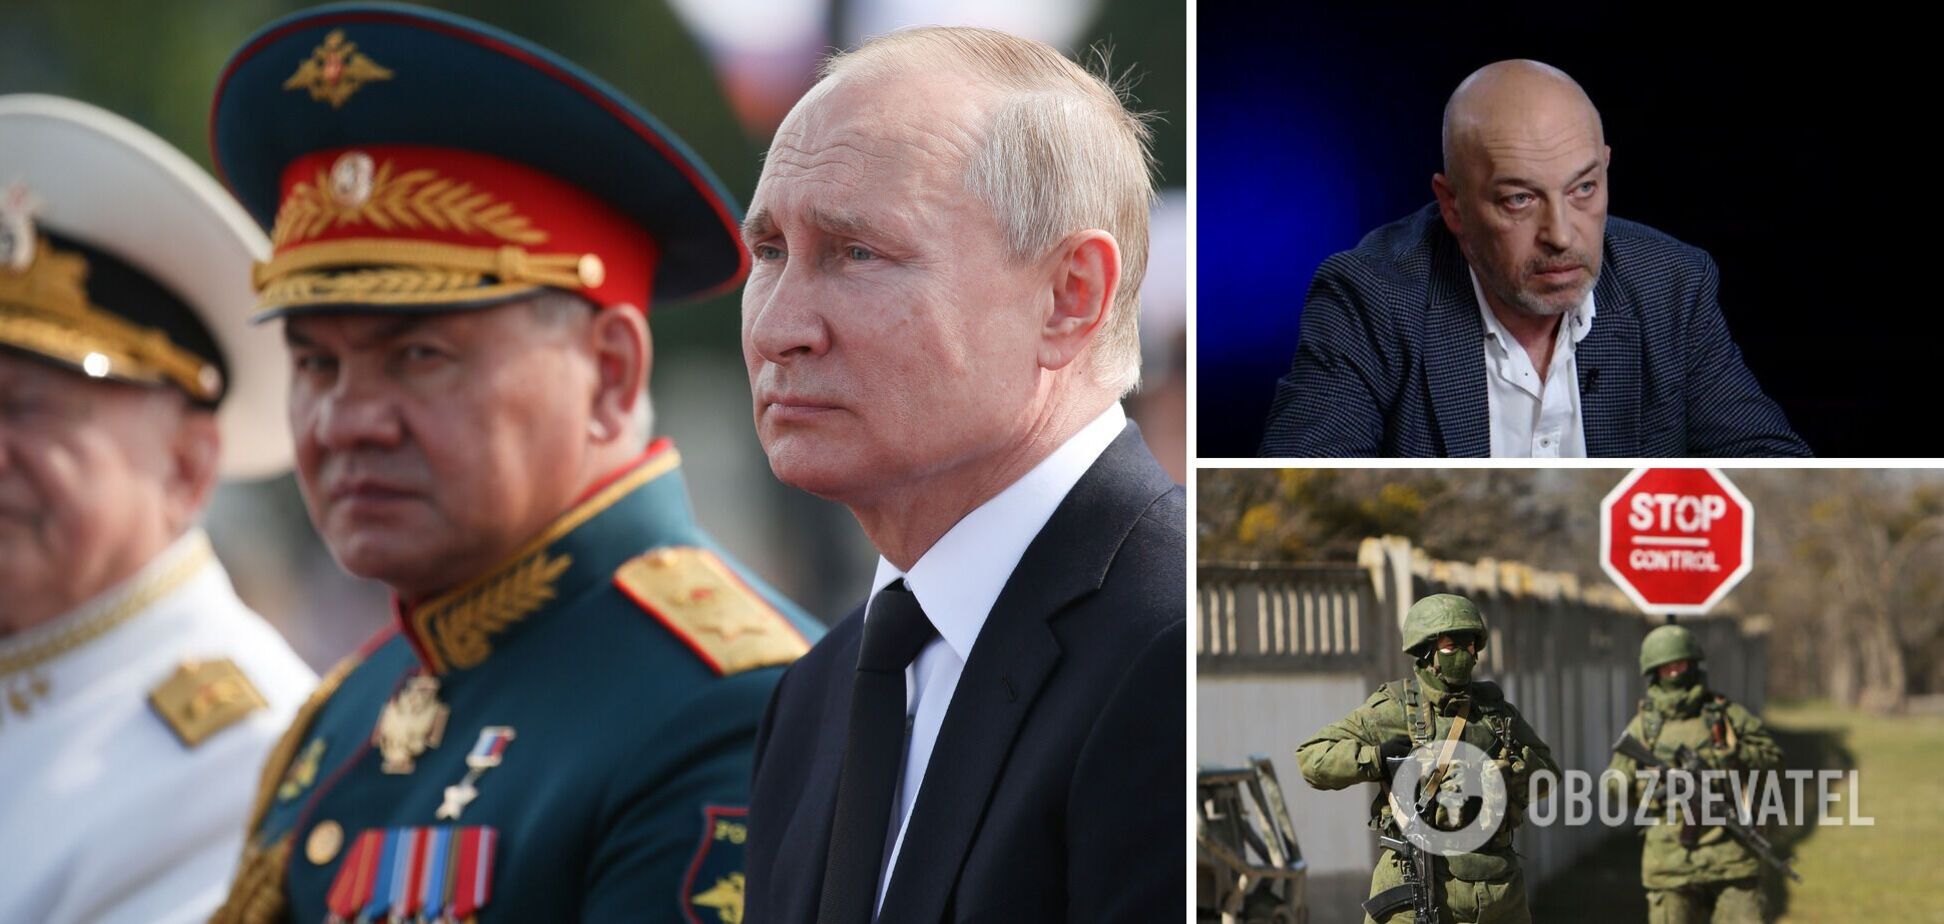 Тука: Путину не нужна Украина. Чего он хочет на самом деле и когда закончится война? Интервью